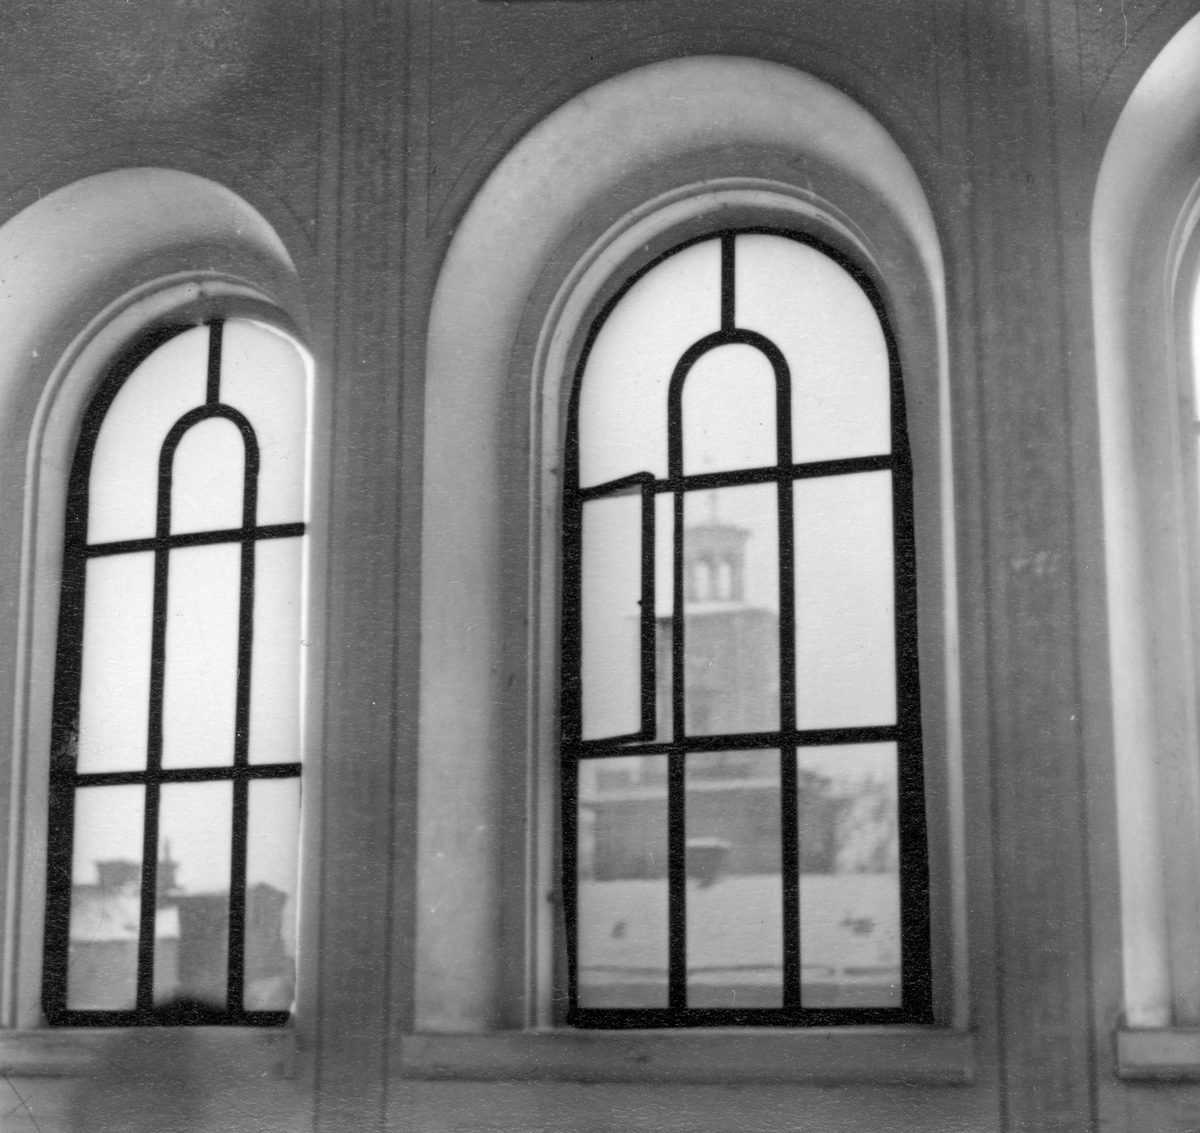 Perspektiv i nordvästlig riktning med vy mot Olaikyrkans klocktorn. Fotografiet taget från översta trapphusfönstret i kvarteret Korpen 19 som låg vid korsningen av Drottninggatan och Repslagaregatan i Norrköping 1953.